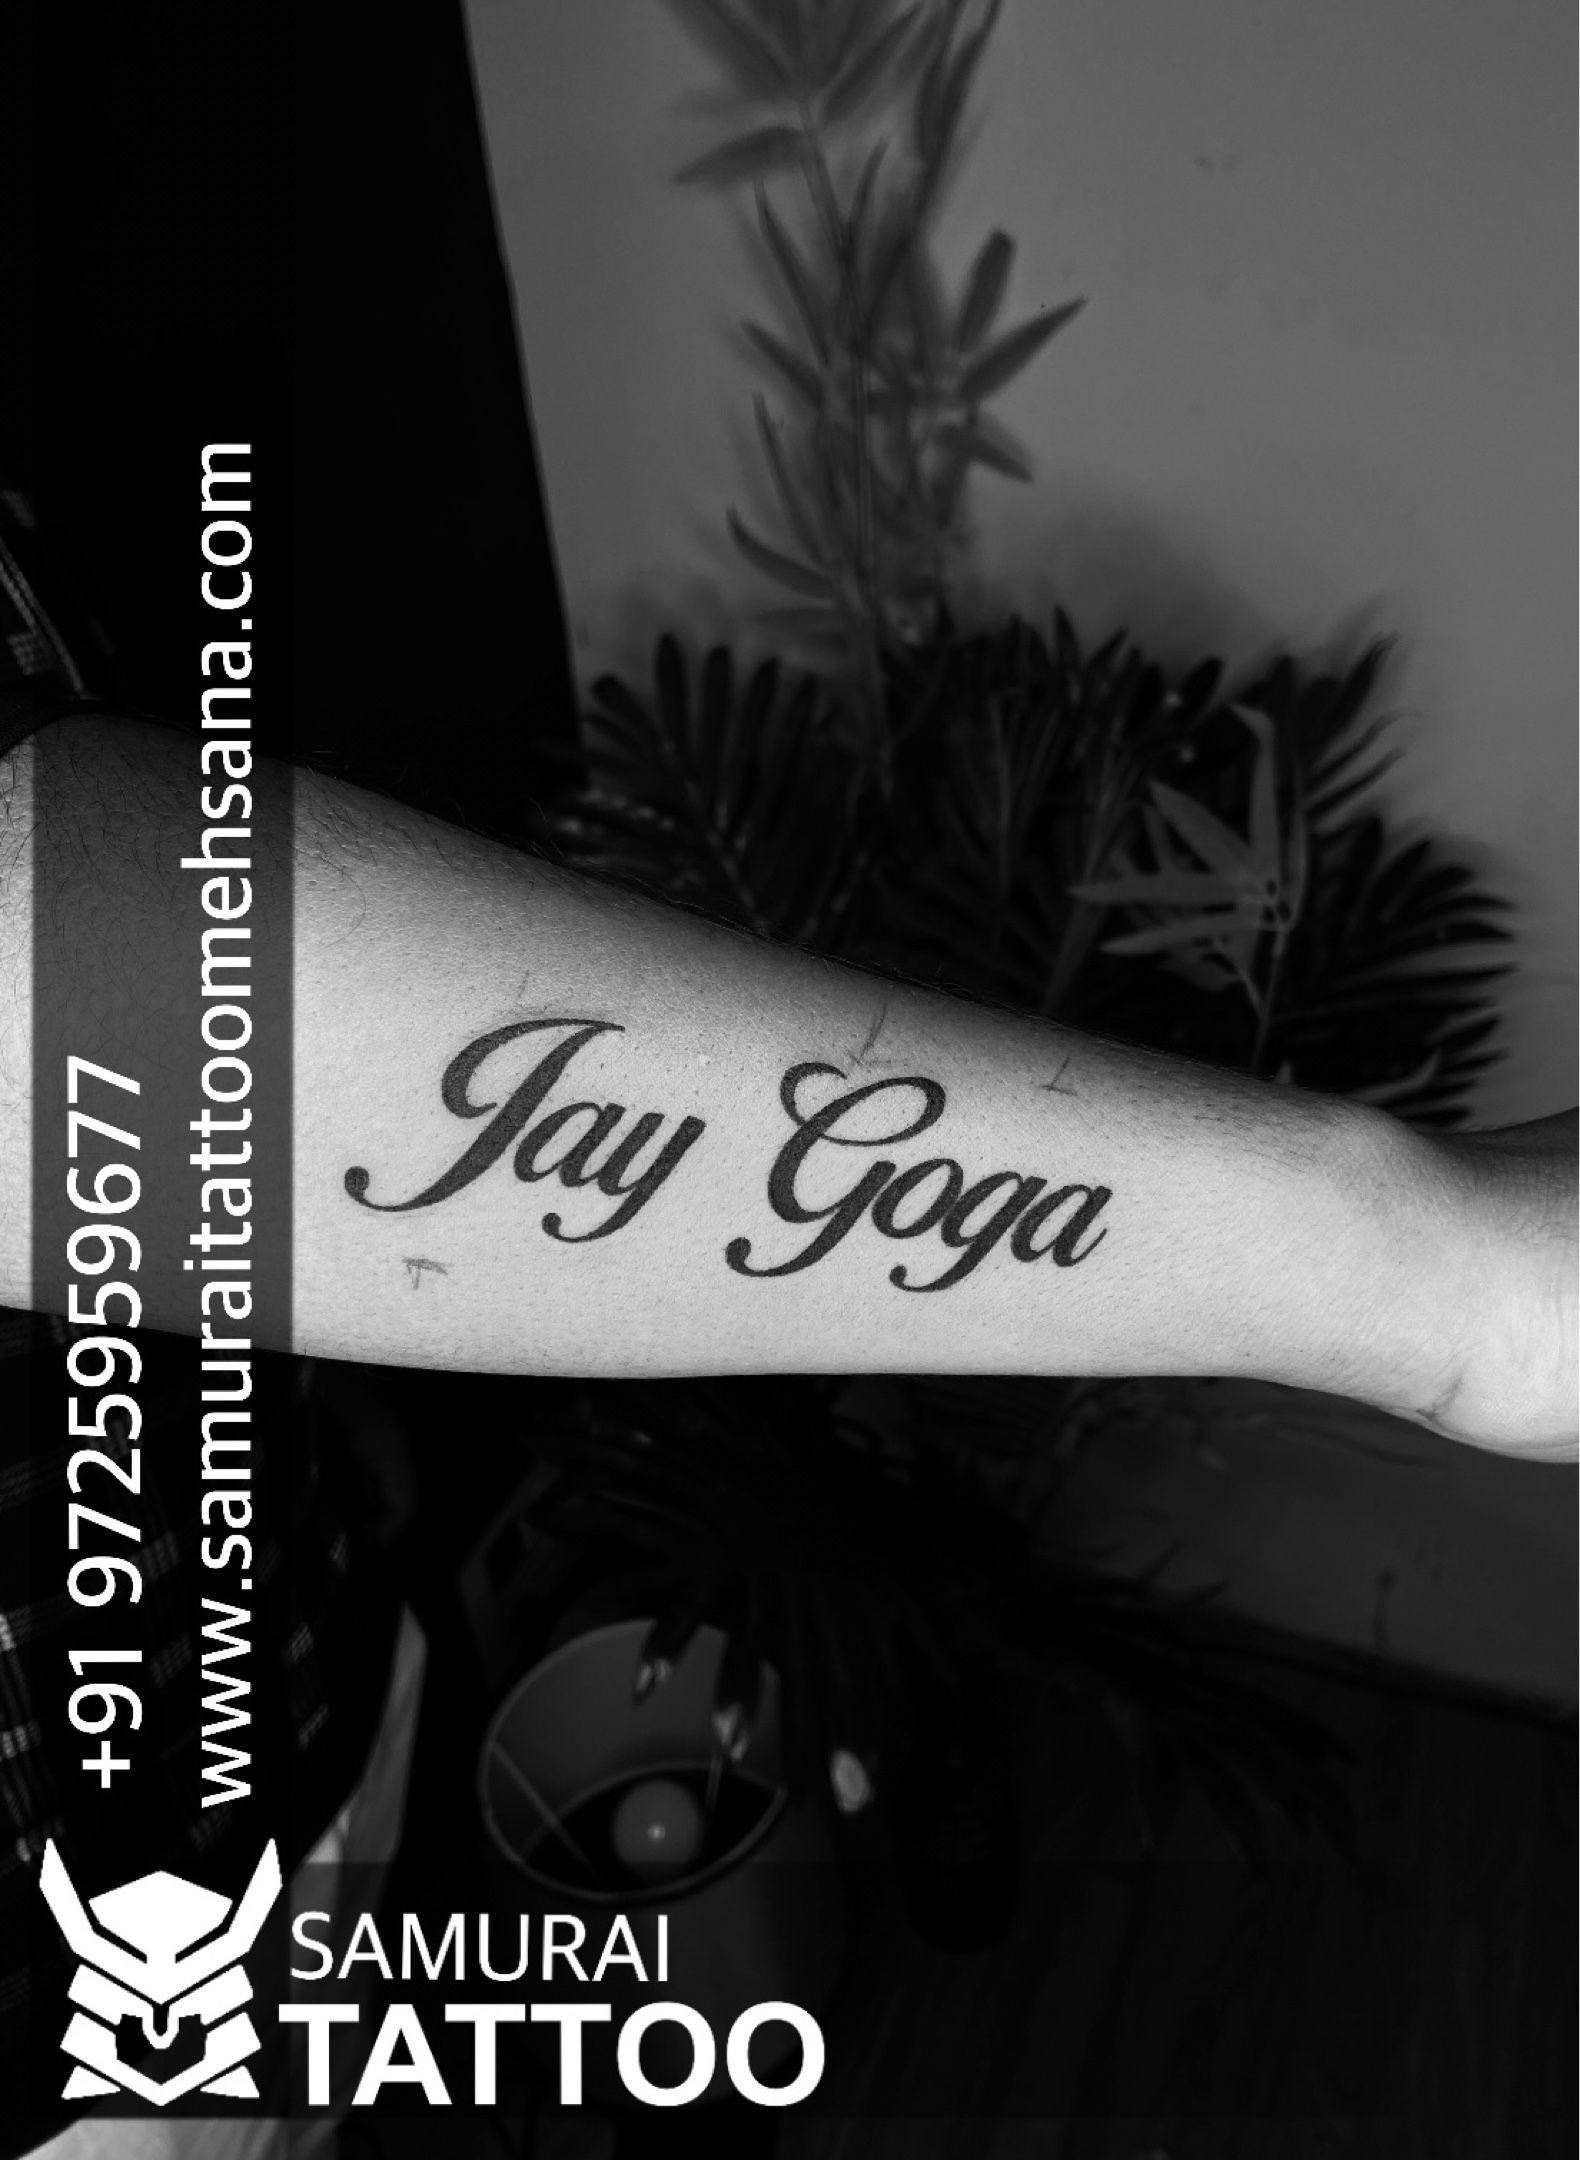 Jay Goga name tattoo  Name tattoo Tattoos Tribal tattoos